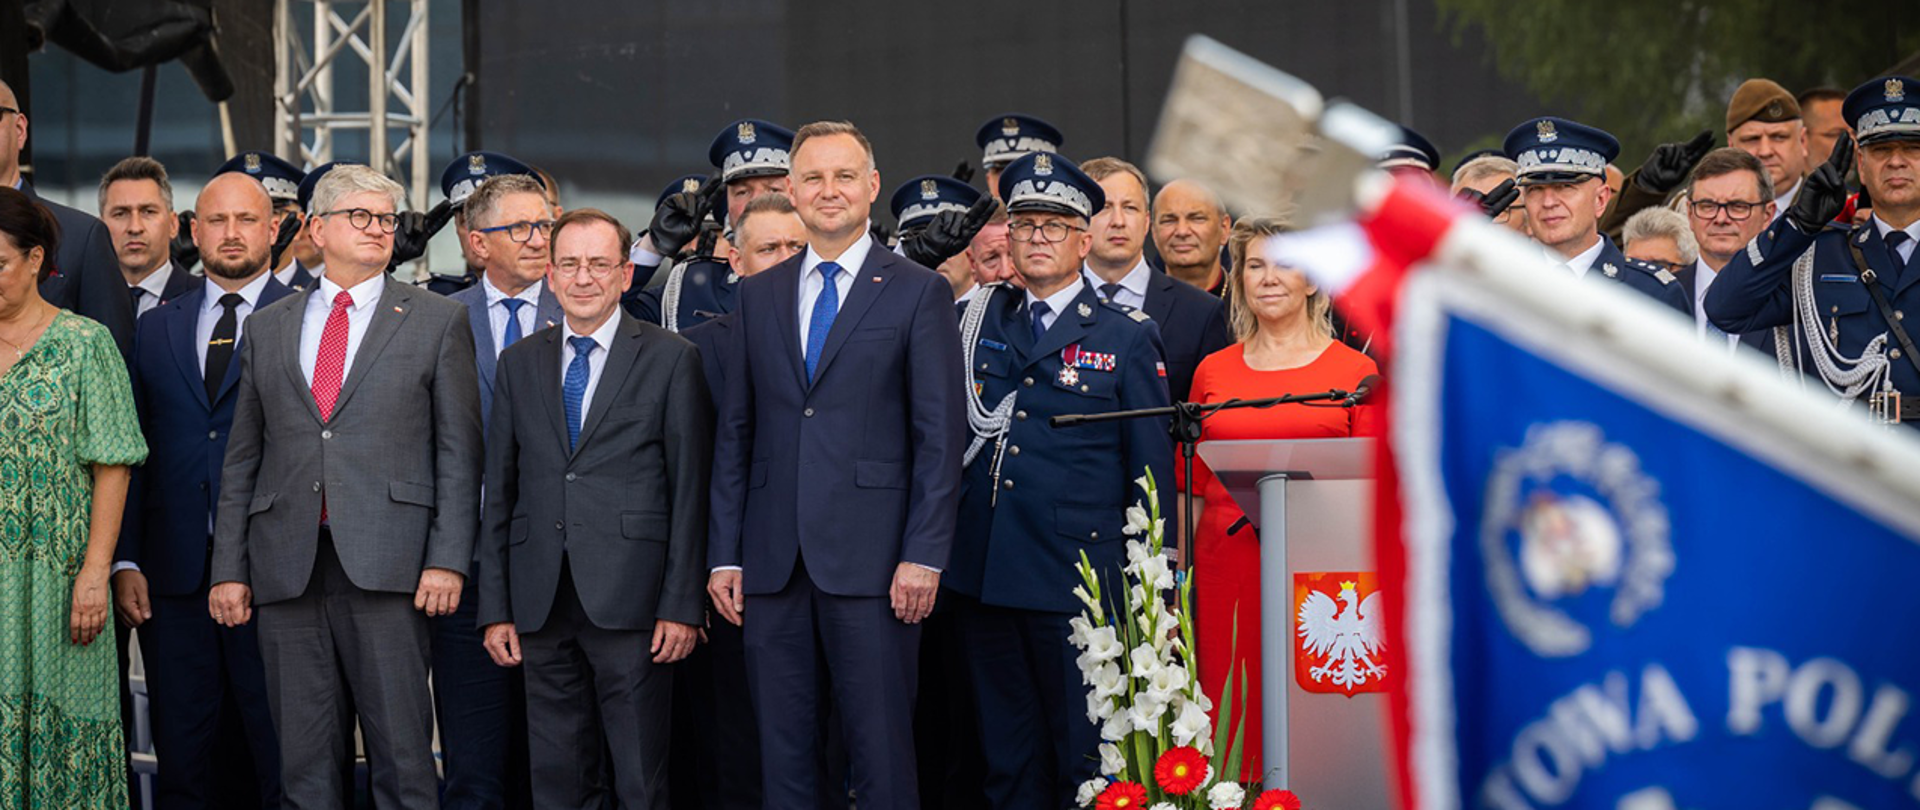 Centralne obchody Święta Policji w Katowicach. Na zdjęciu między innymi prezydent RP Andrzej Duda oraz minister Mariusz Kamiński.